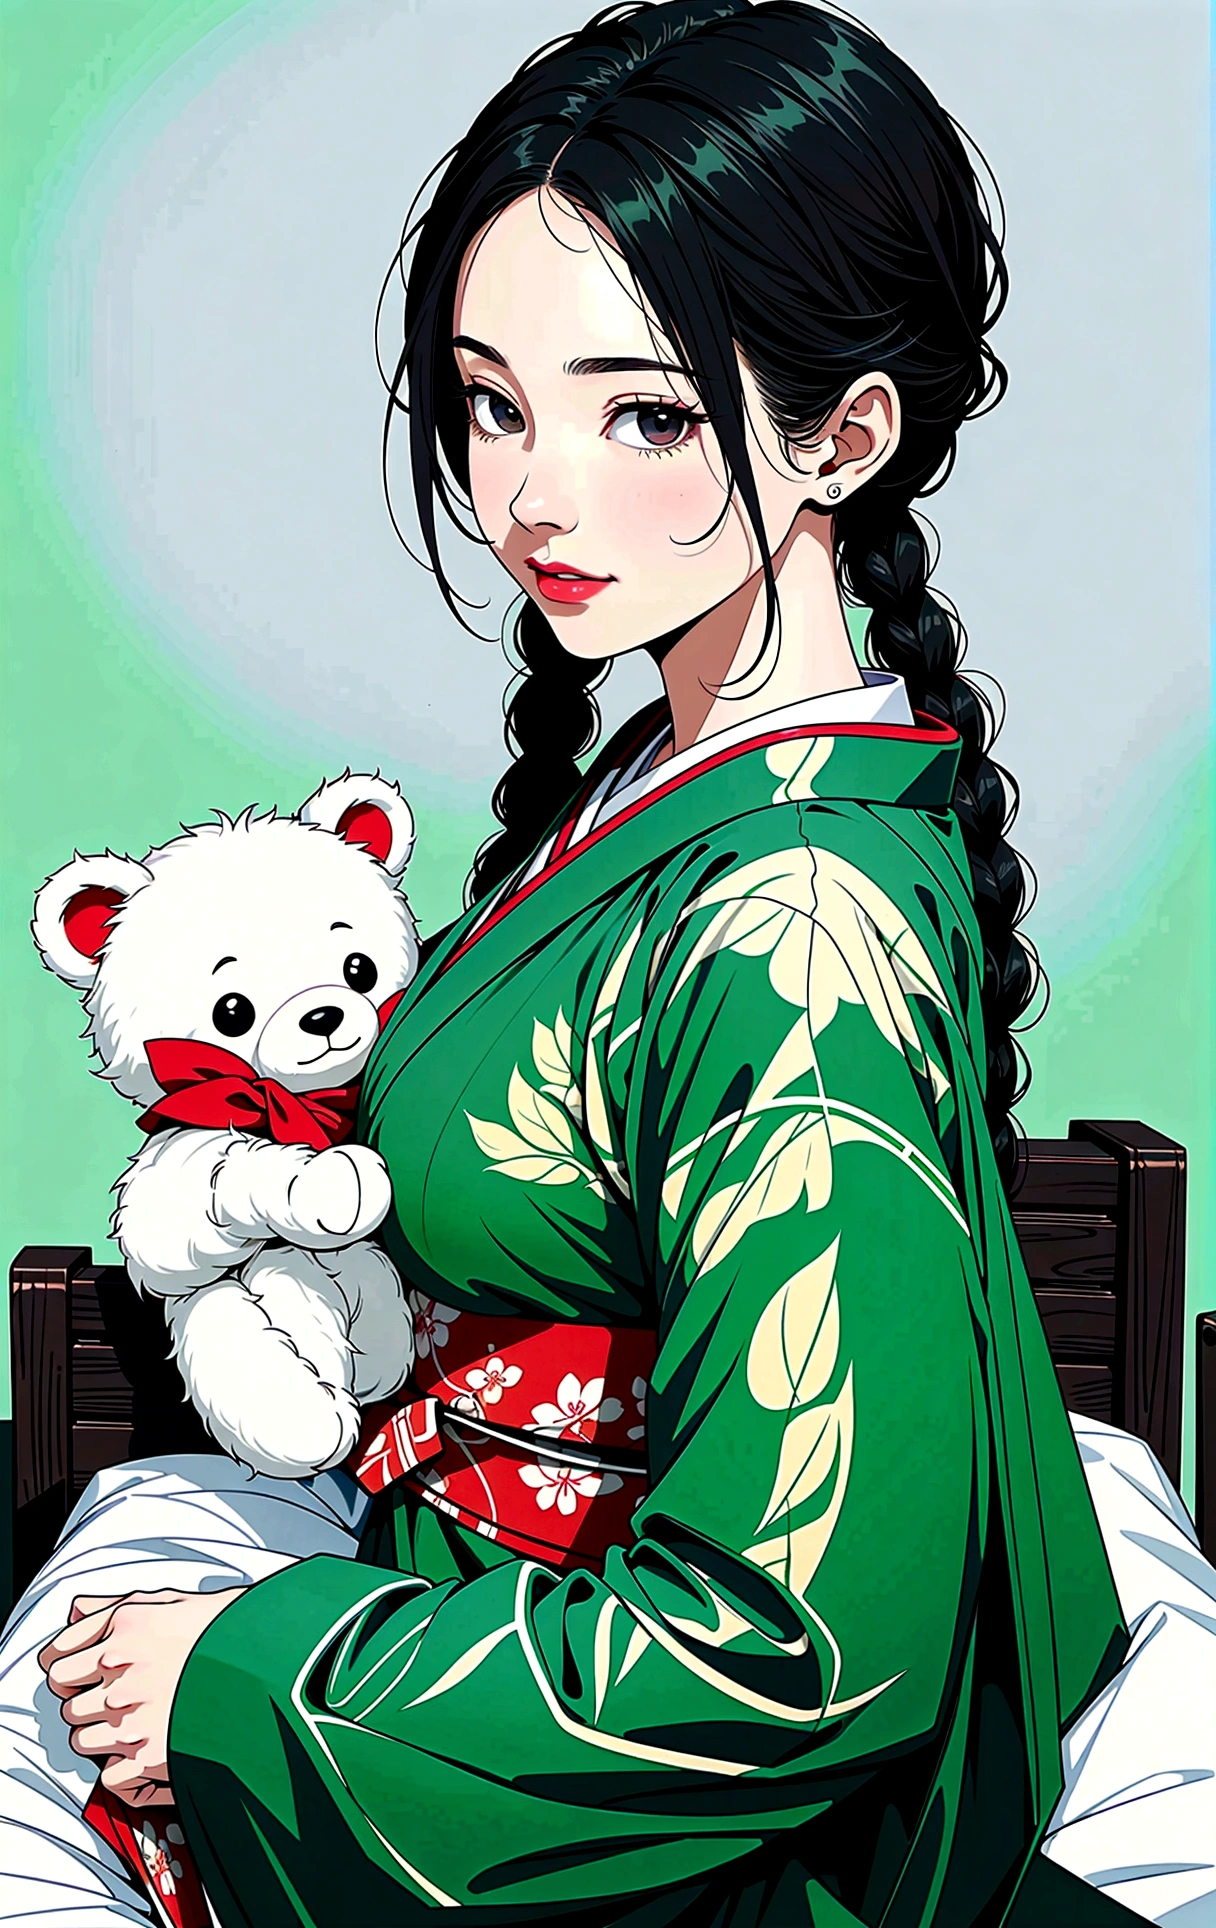 (تحفة, أفضل جودة), (دقة عالية جدًا, 8K-RAW-صور, واقعية, تظليل النسيج, محيط رقيق), araffe امرأة ناضجة in a kimono, يجلس على السرير ويعانق دمية دب, (يرتدي أردية حريرية خضراء داكنة), القنب الأخضر الداكن, (ارتداء الكيمونو الياباني:1.2, اليابانية التقليدية, ملابس يابانية), (ملابس يوكاتا النبيلة), ارتداء هاوري, (امرأة ناضجة, جبهة مورو:1.5, 28 سنه, وحيد), (كبيرe Brust, ترهل الثدي, كبير , الخصر النحيف, كبير ass, أجساد متعرجة), (شعر متوسط الطول, شعر فوق عين واحدة, شعر غير متماثل, جديلة منخفضة مربوطة), (الطلاب الأذكياء, عيون مفصلة, وجه ذو تفاصيل عالية), حلوى العين, (ابتسامة حزينة), (انظر اسفل:1.3), (الزاوية الديناميكية, من اعلى), (التشريح الصحيح:1.5, الأيدي اليمنى), (النسبة المثالية لنسب الجسم),